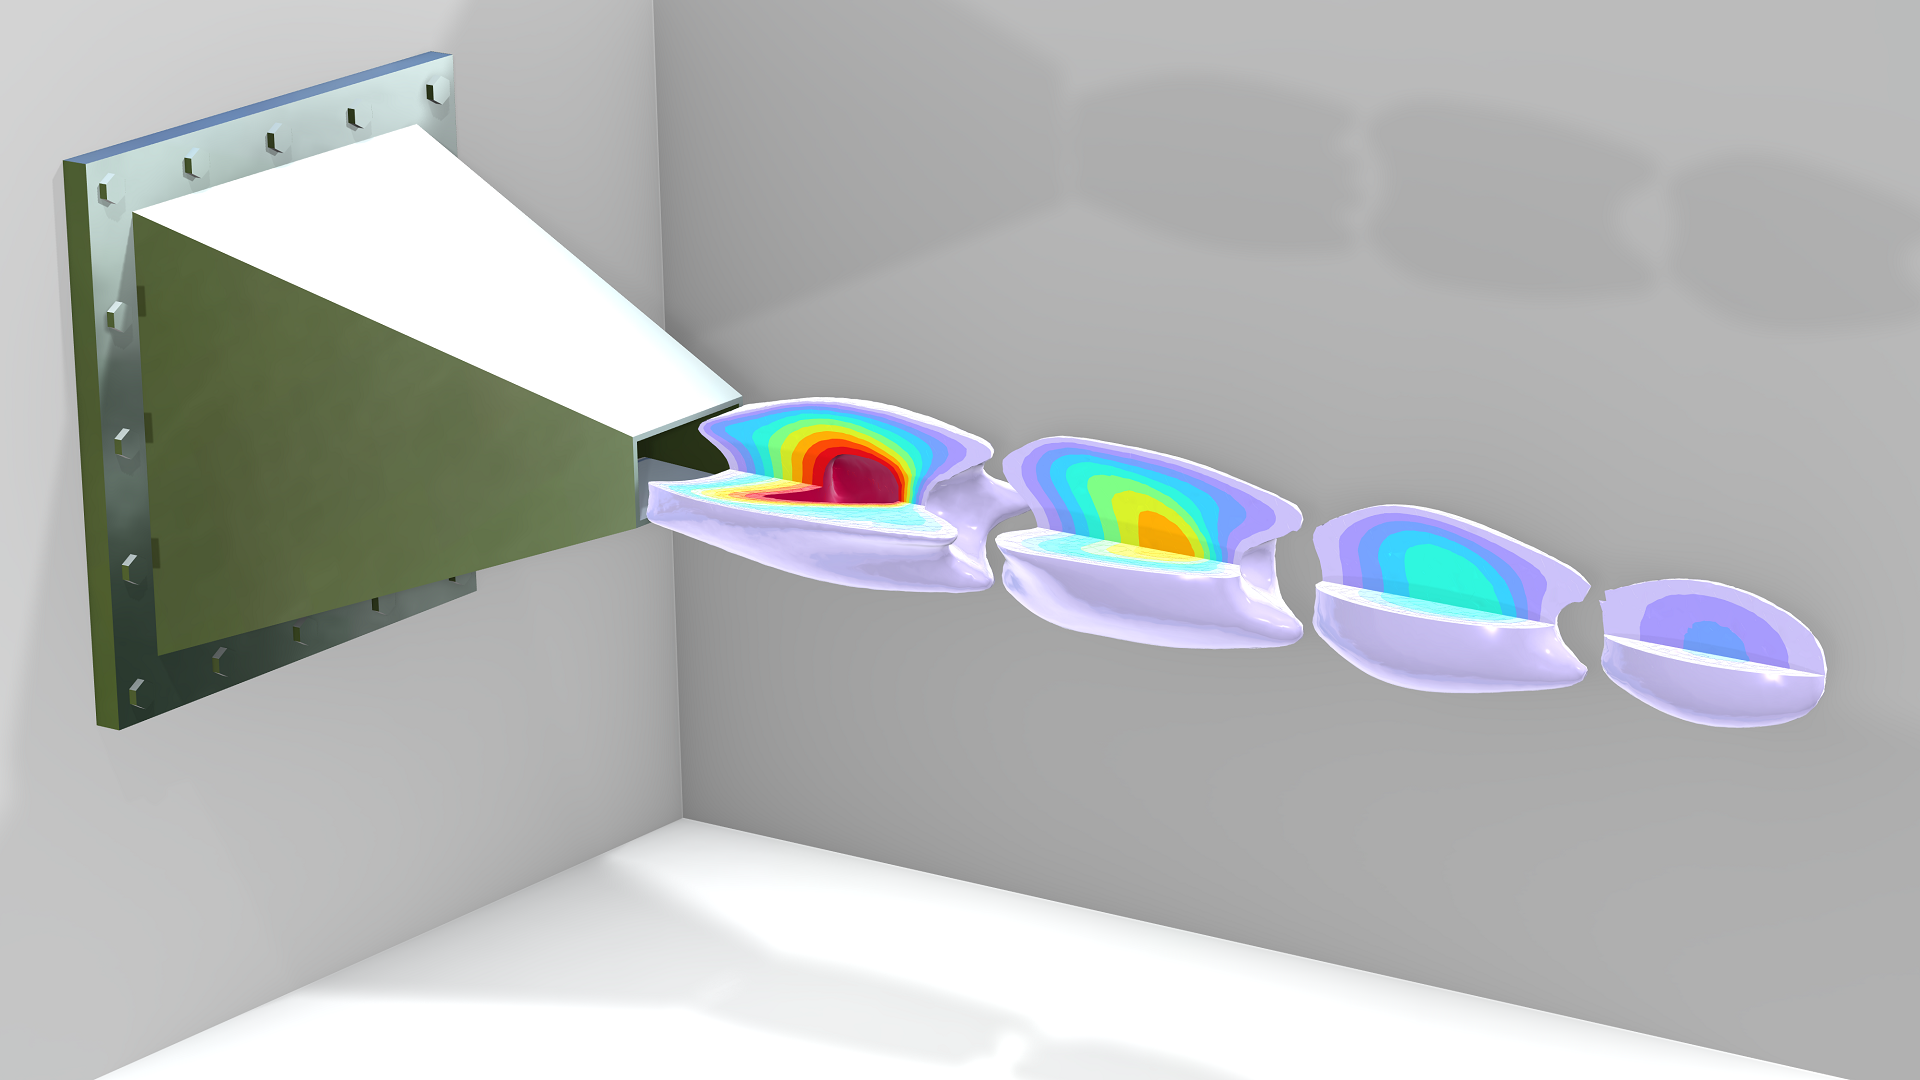 title="" alt="En modell av ett ramjetmunstycke och dess strömning, visad med isosytor i färgtabellen Prism.